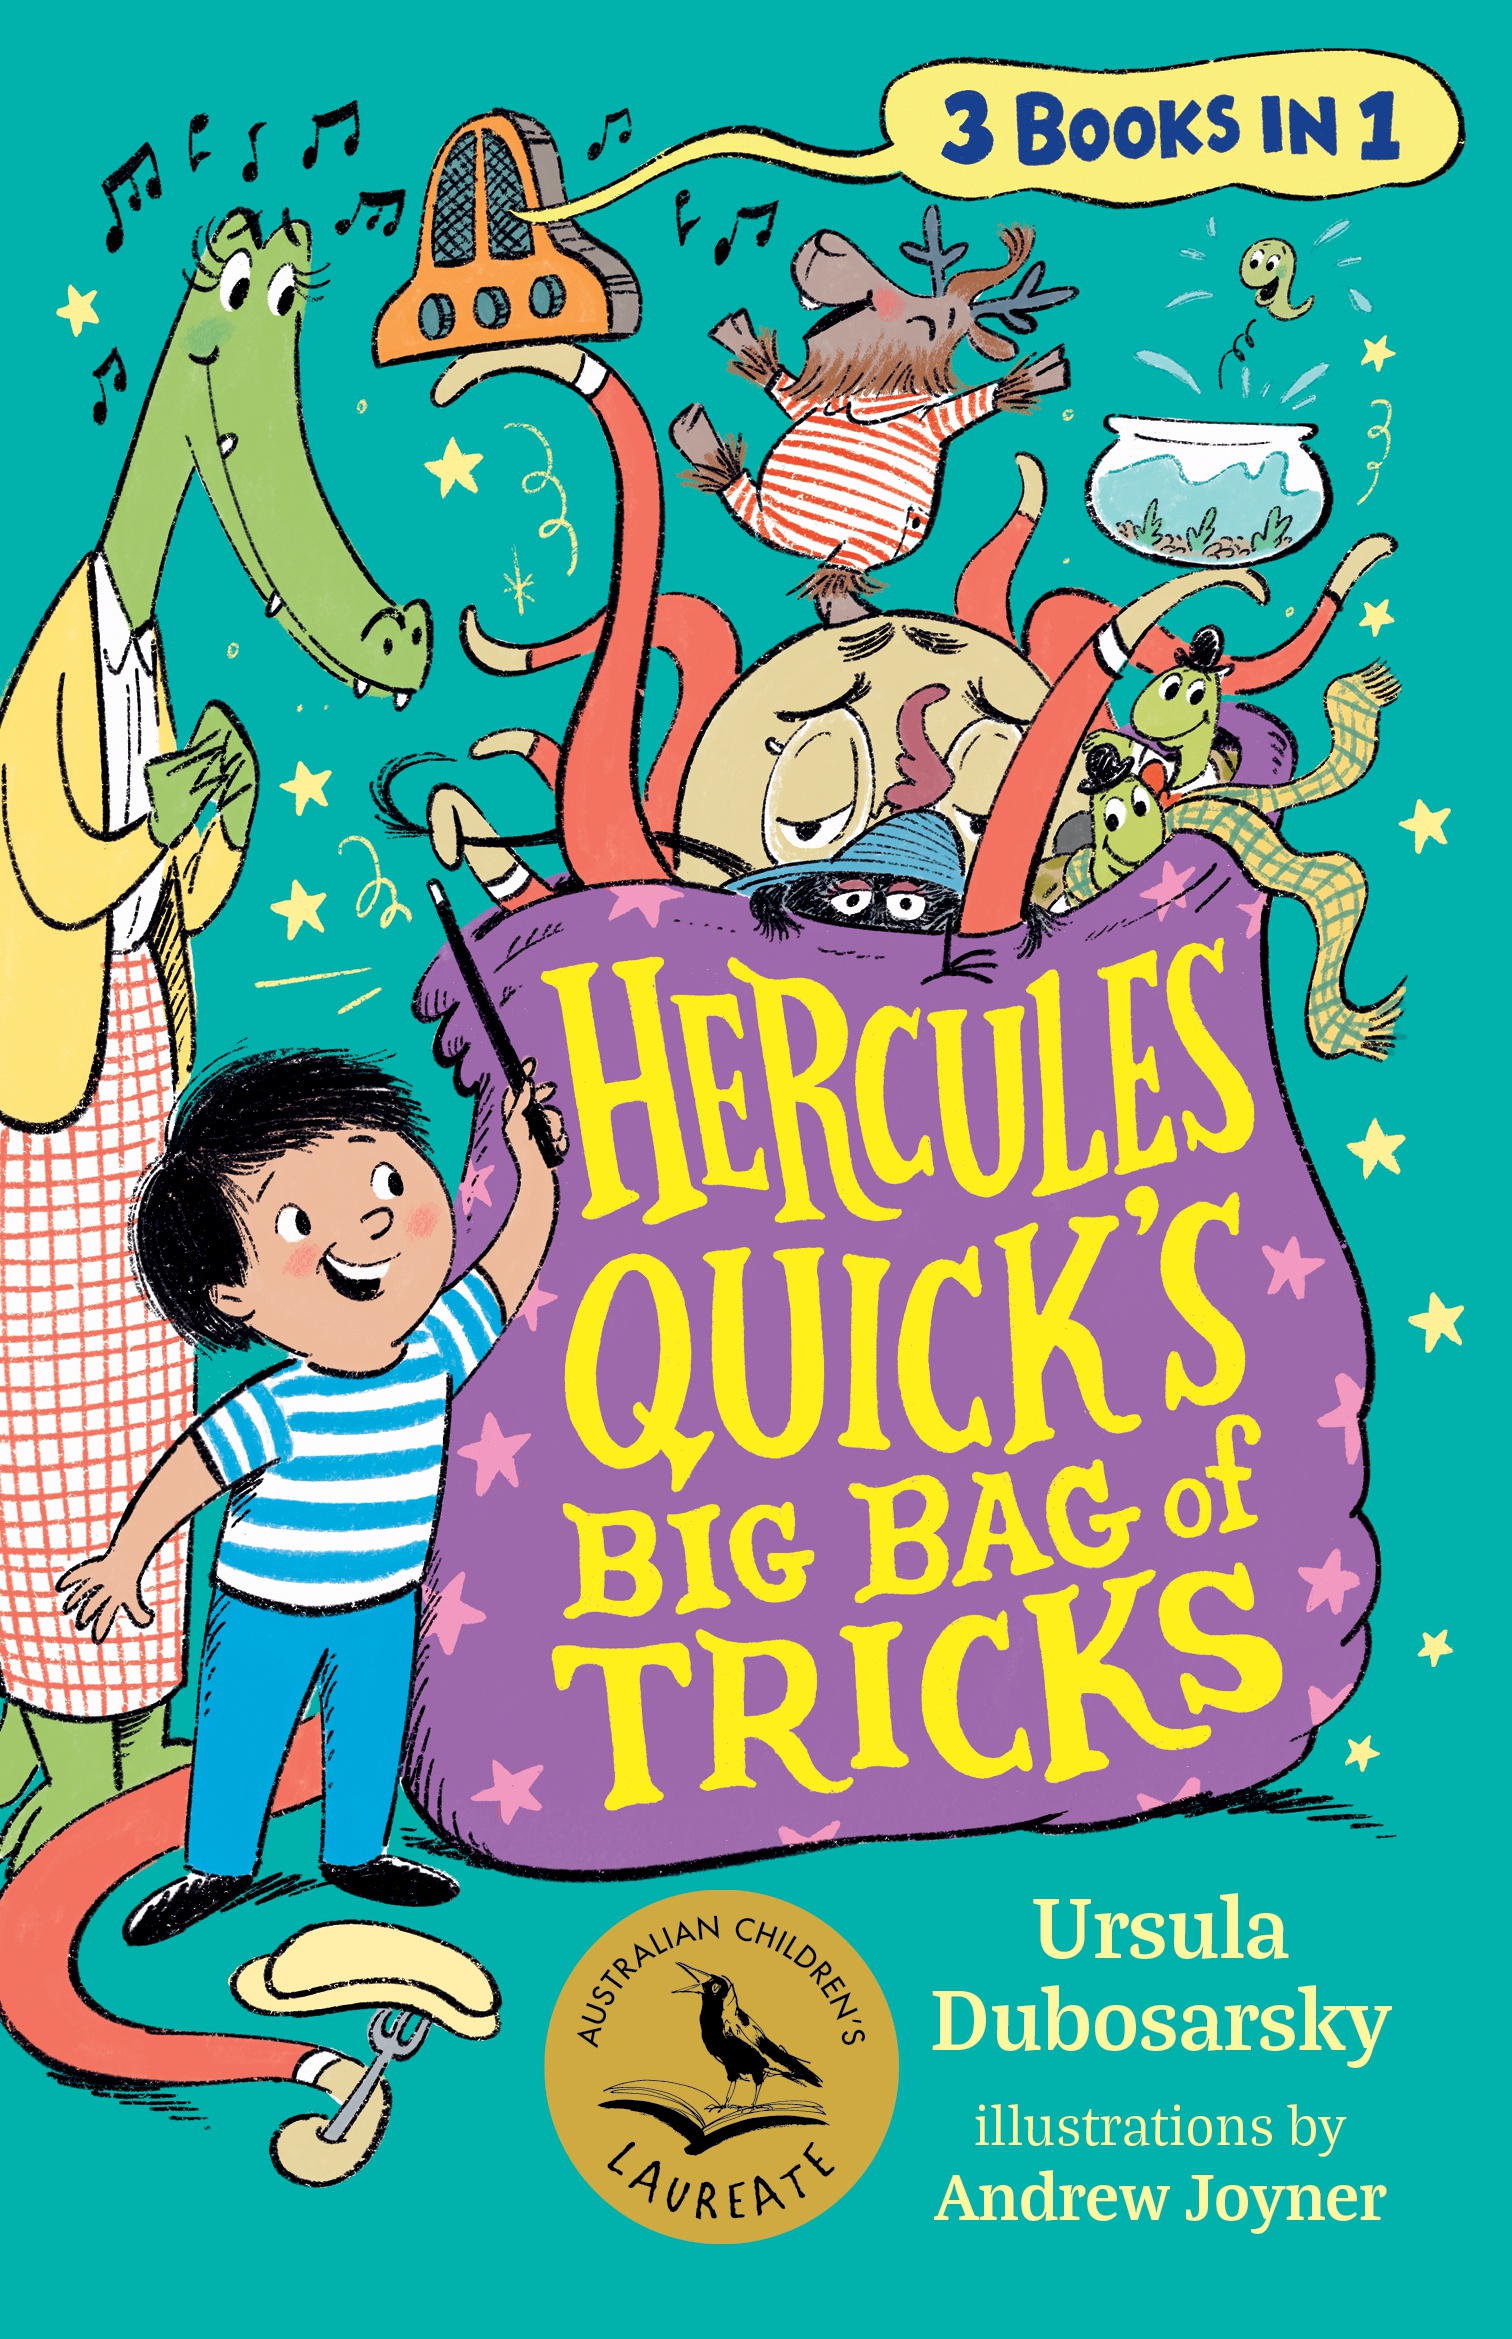 book cover image of hercules quick's big bag of tricks